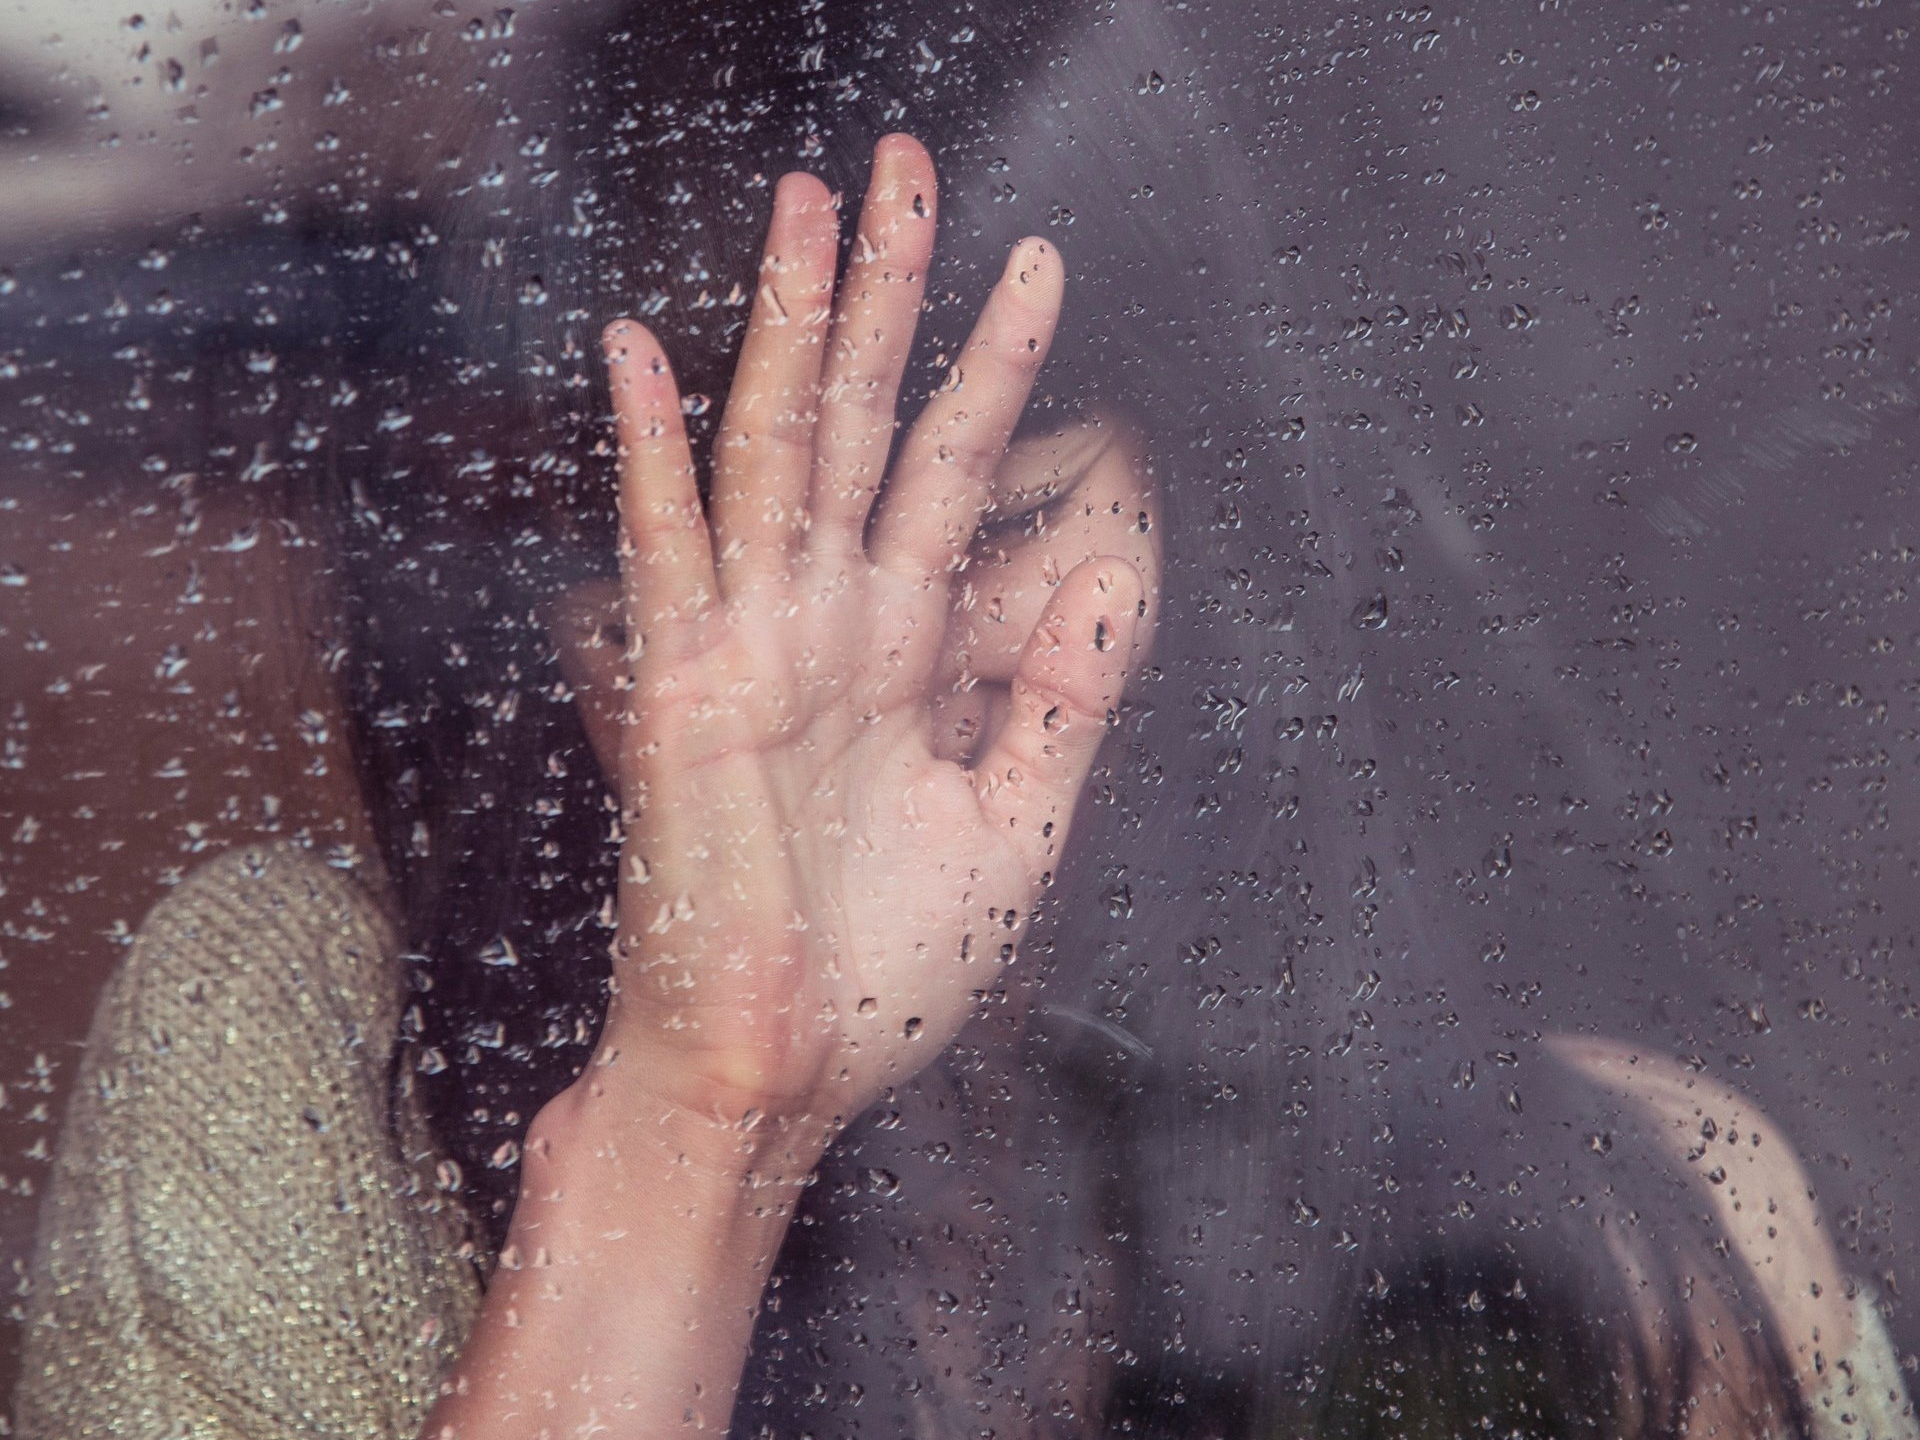 Una donna si copre il viso con la mano dietro una finestra su cui cadono gocce di pioggia.